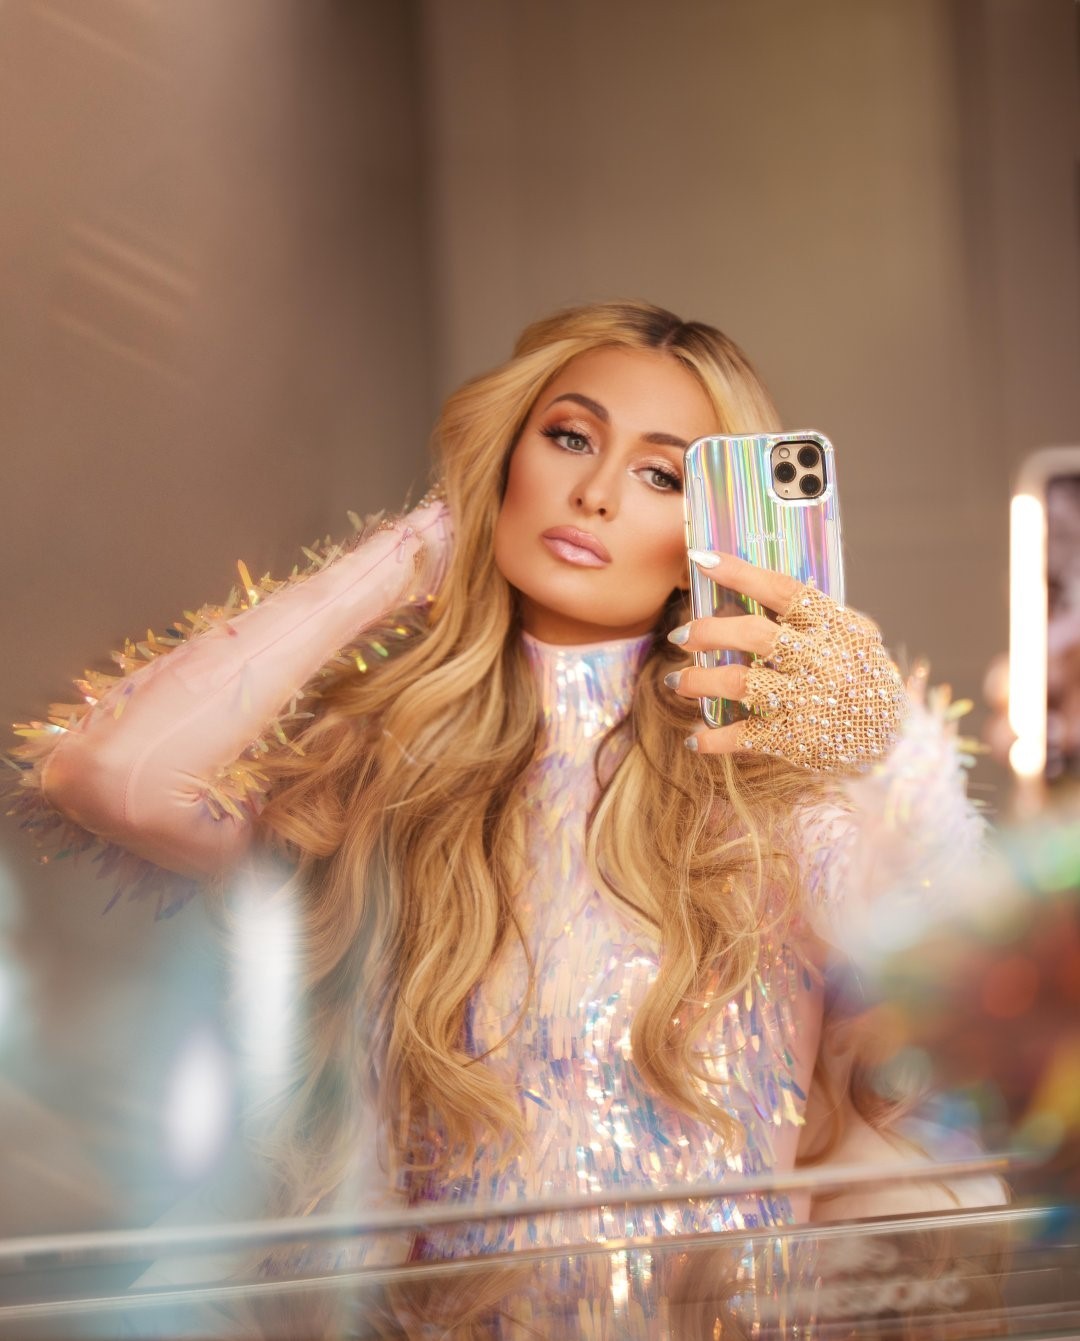 Photos n°2 : Holographic Paris Hilton!